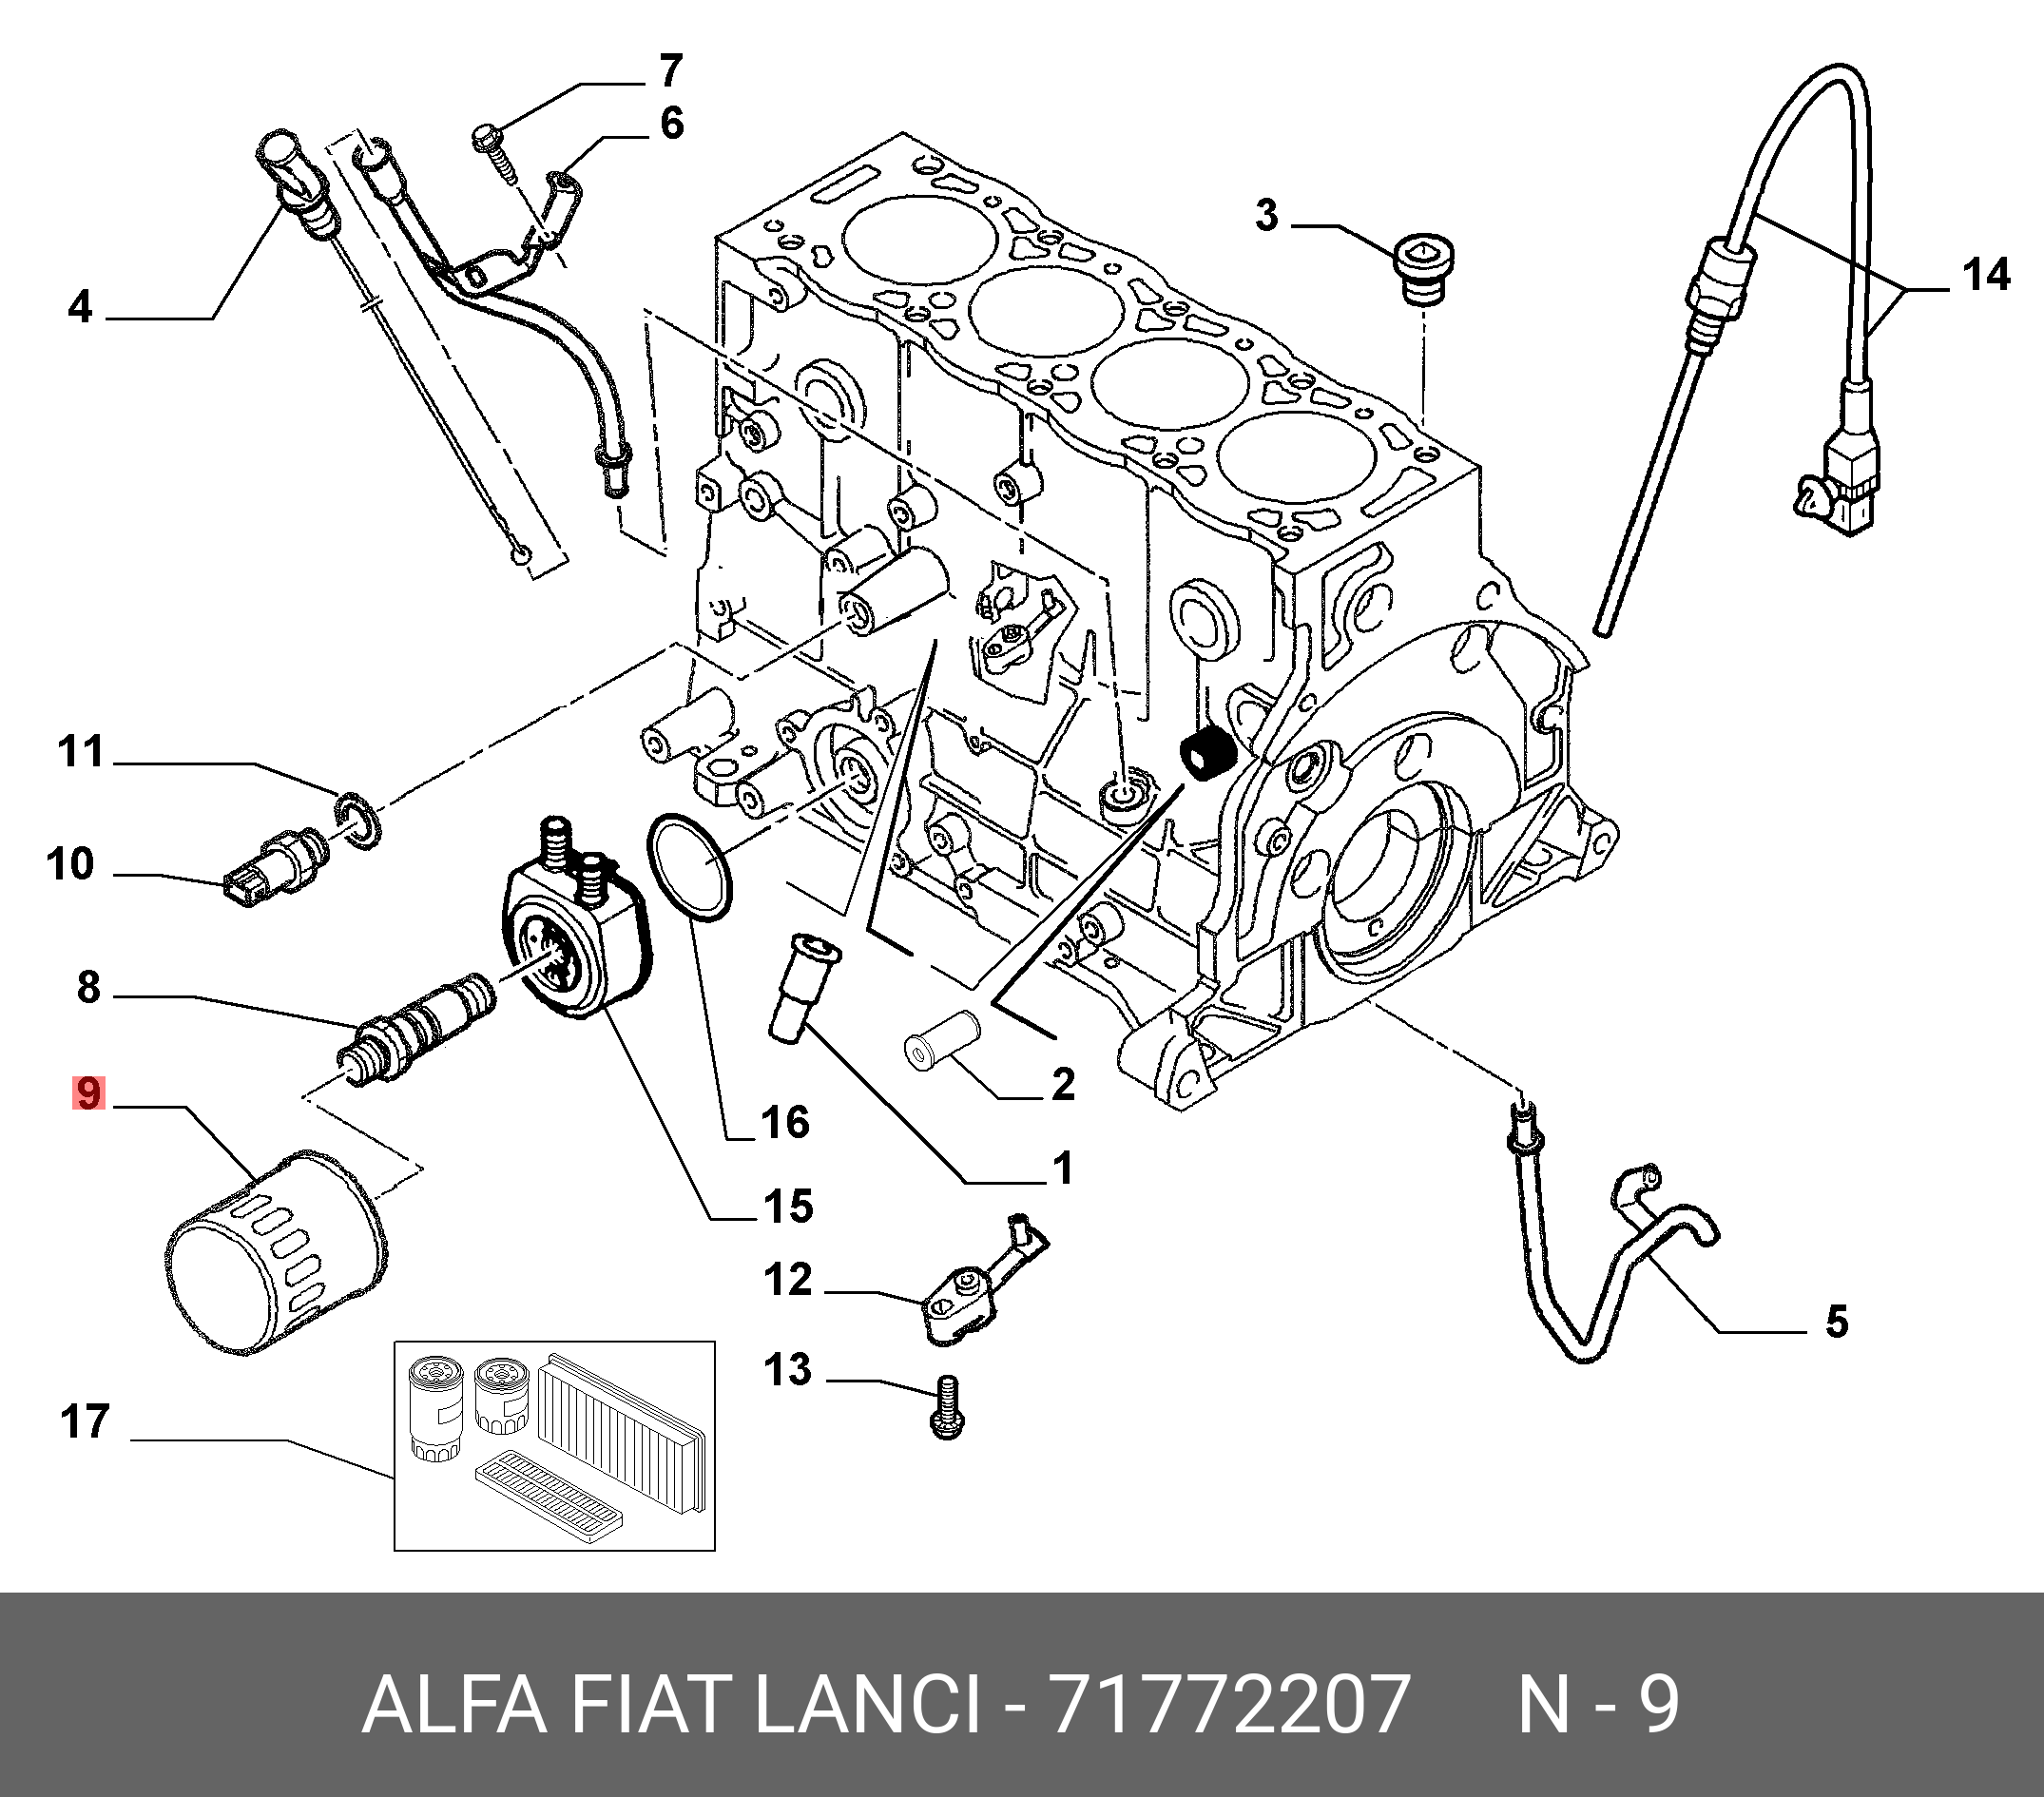 Фильтр масляный - Fiat/Alfa/Lancia 71772207